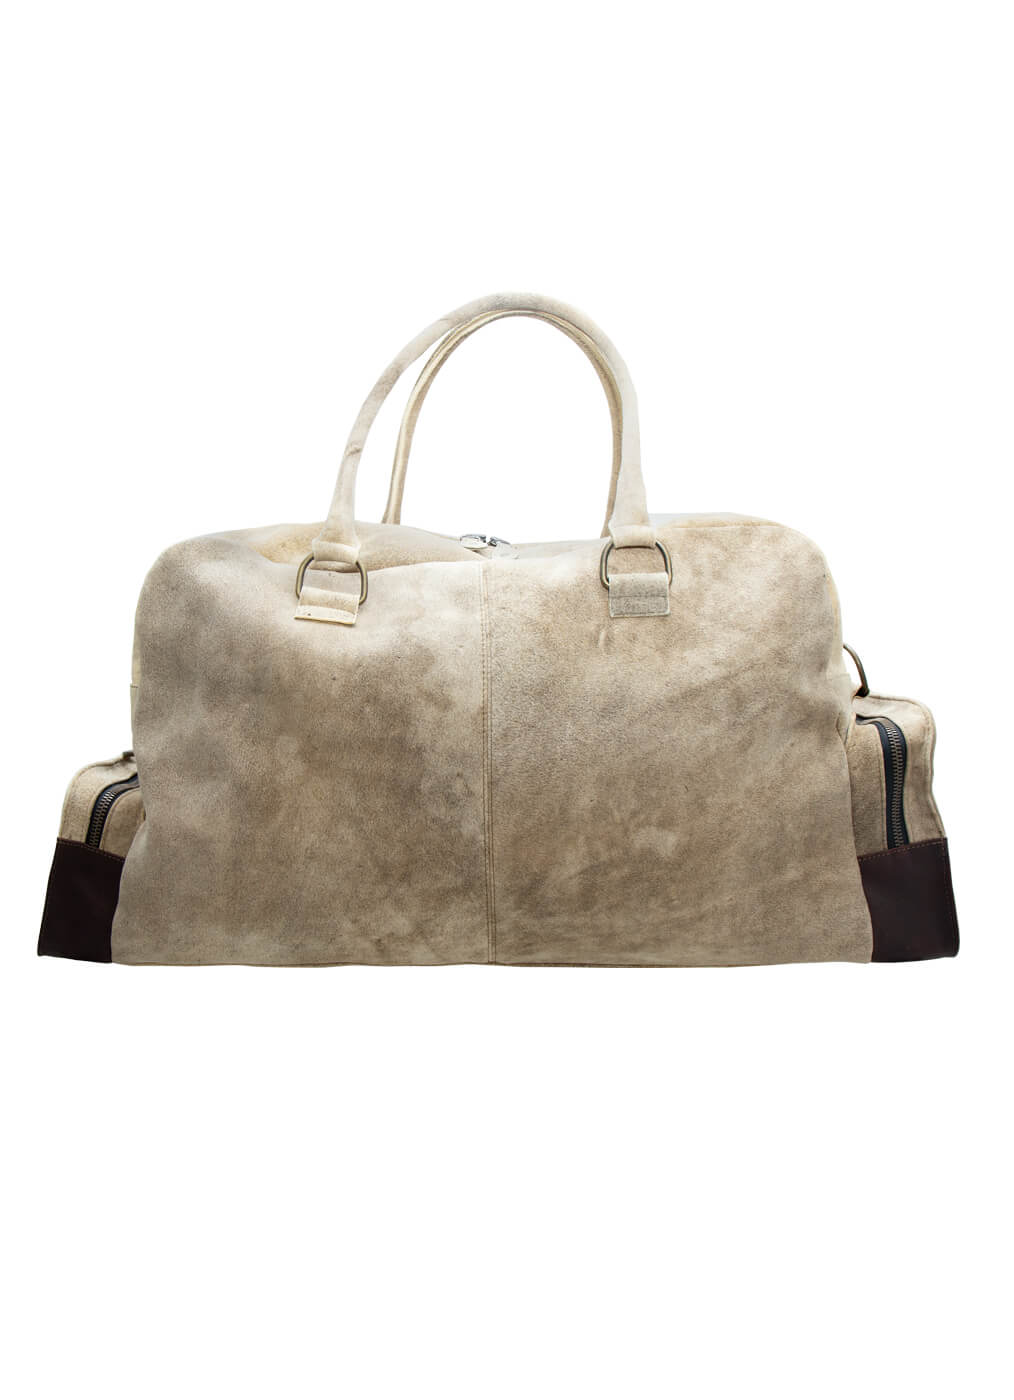 Deer Leather Bag “Camper Bag”, glacier